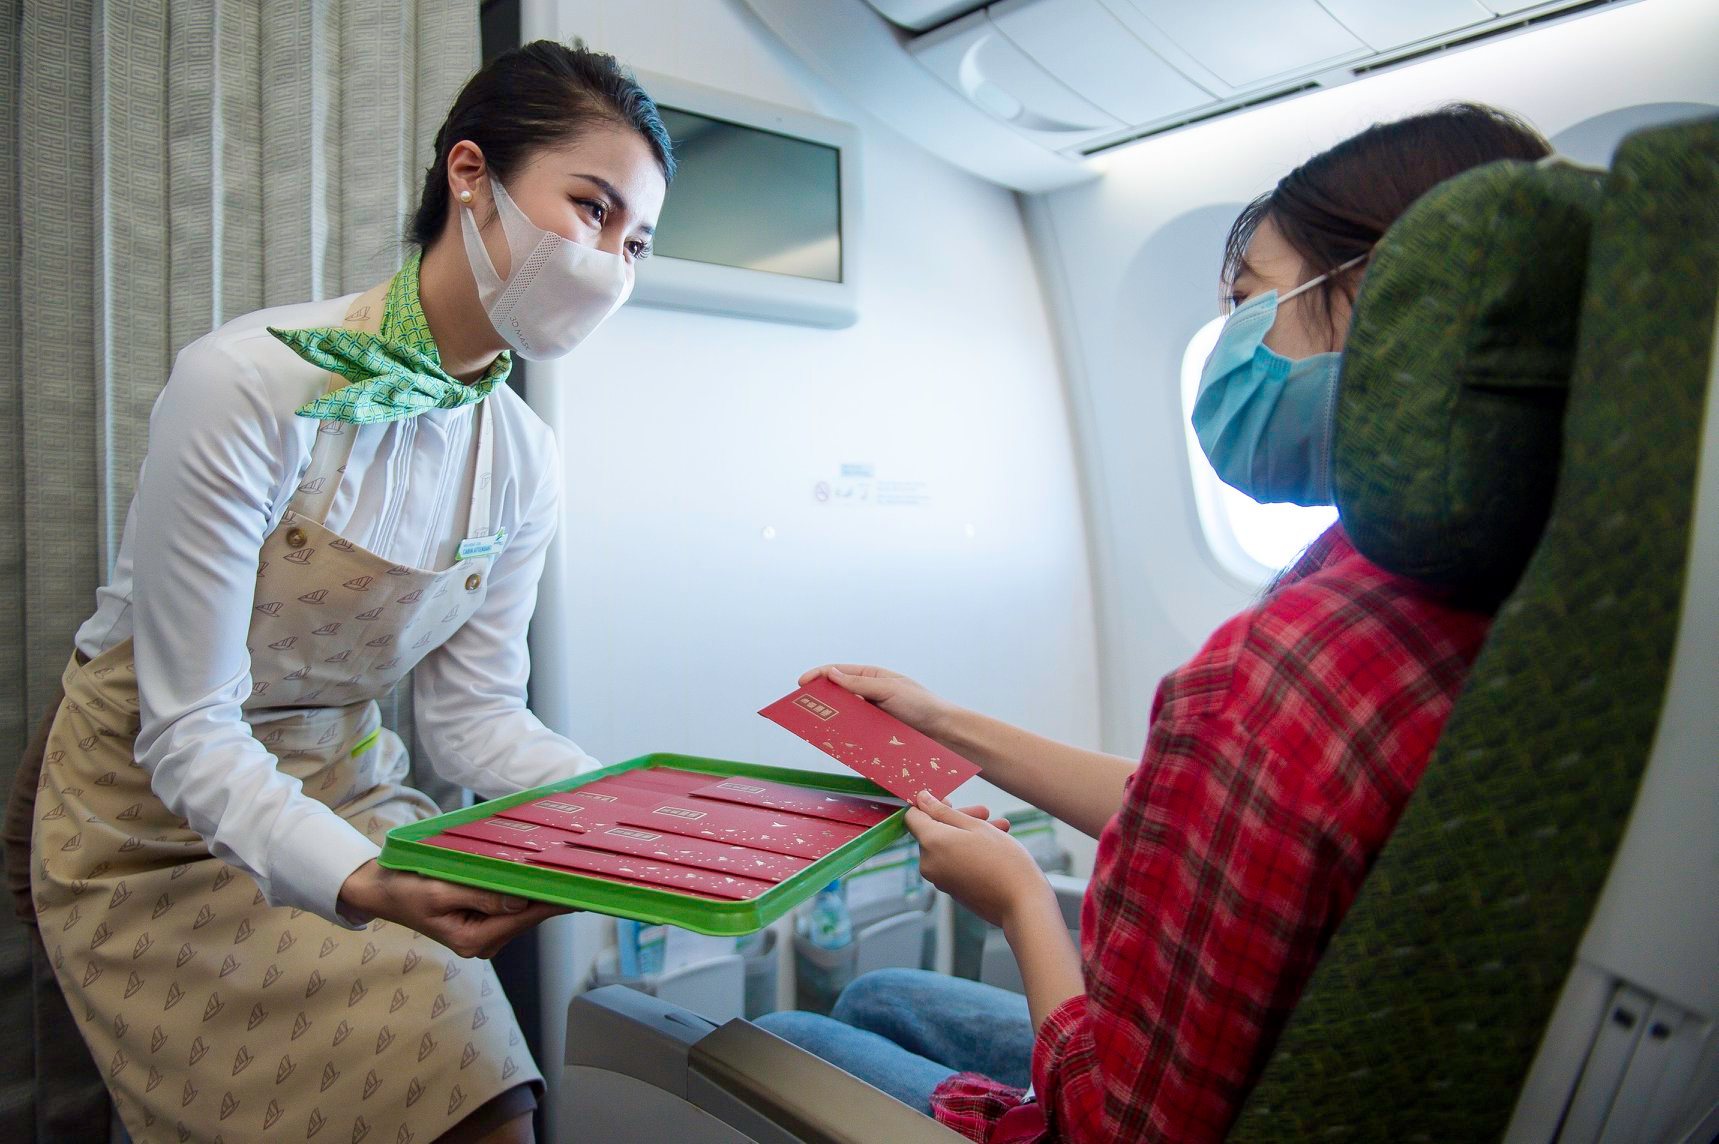 Bamboo Airways tung ưu đãi “khủng” giảm tới 35% vé bay Tết Nhâm Dần cho các nhóm khách